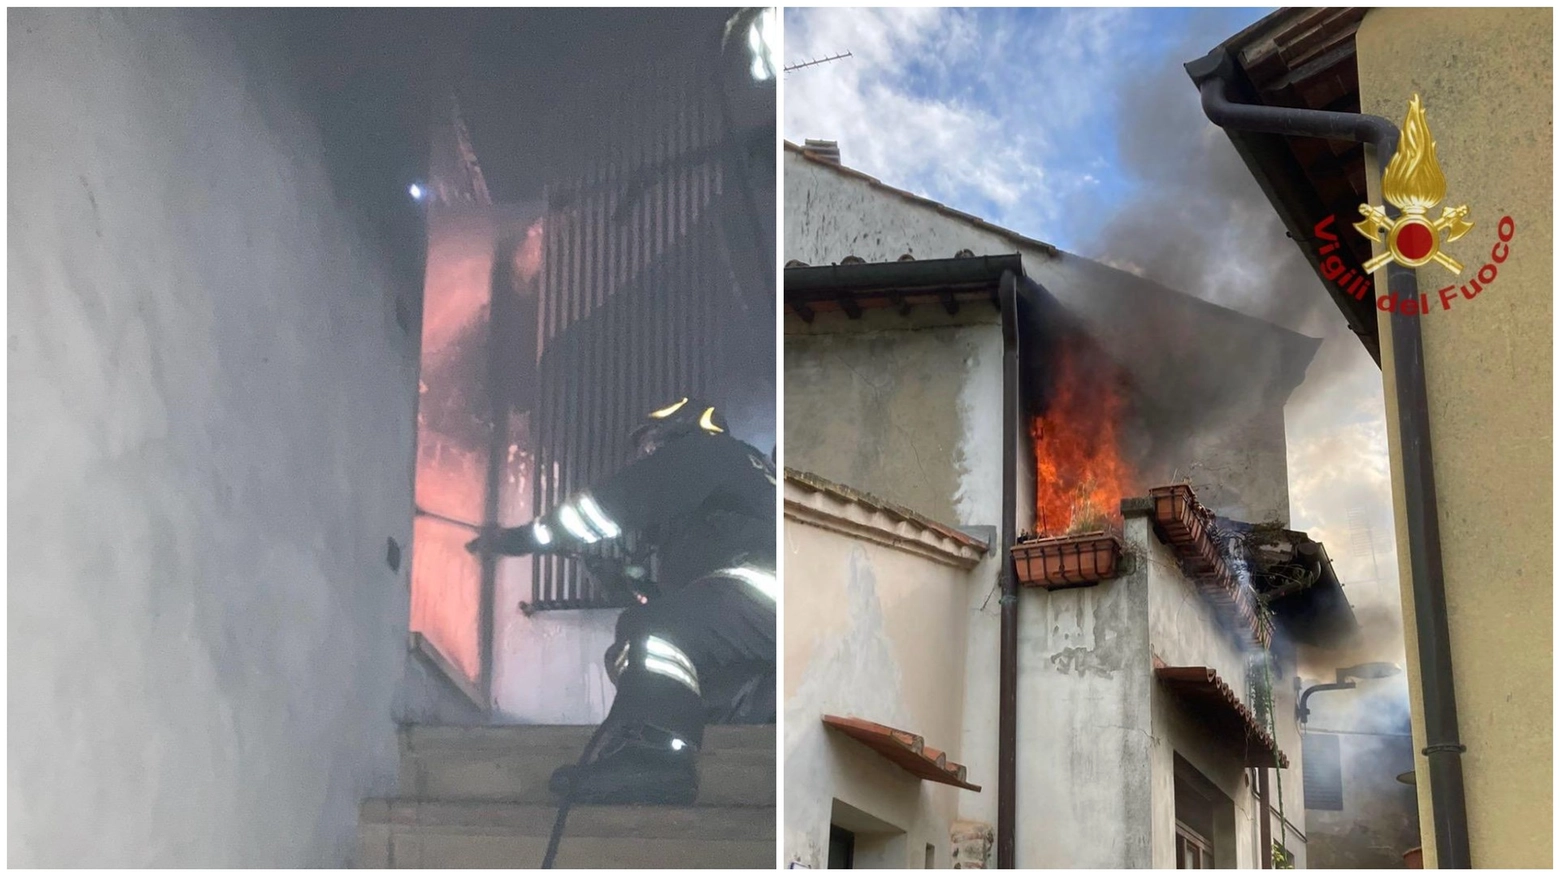 L'intervento dei vigili del fuoco e la casa in fiamme (foto Vigili del Fuoco)